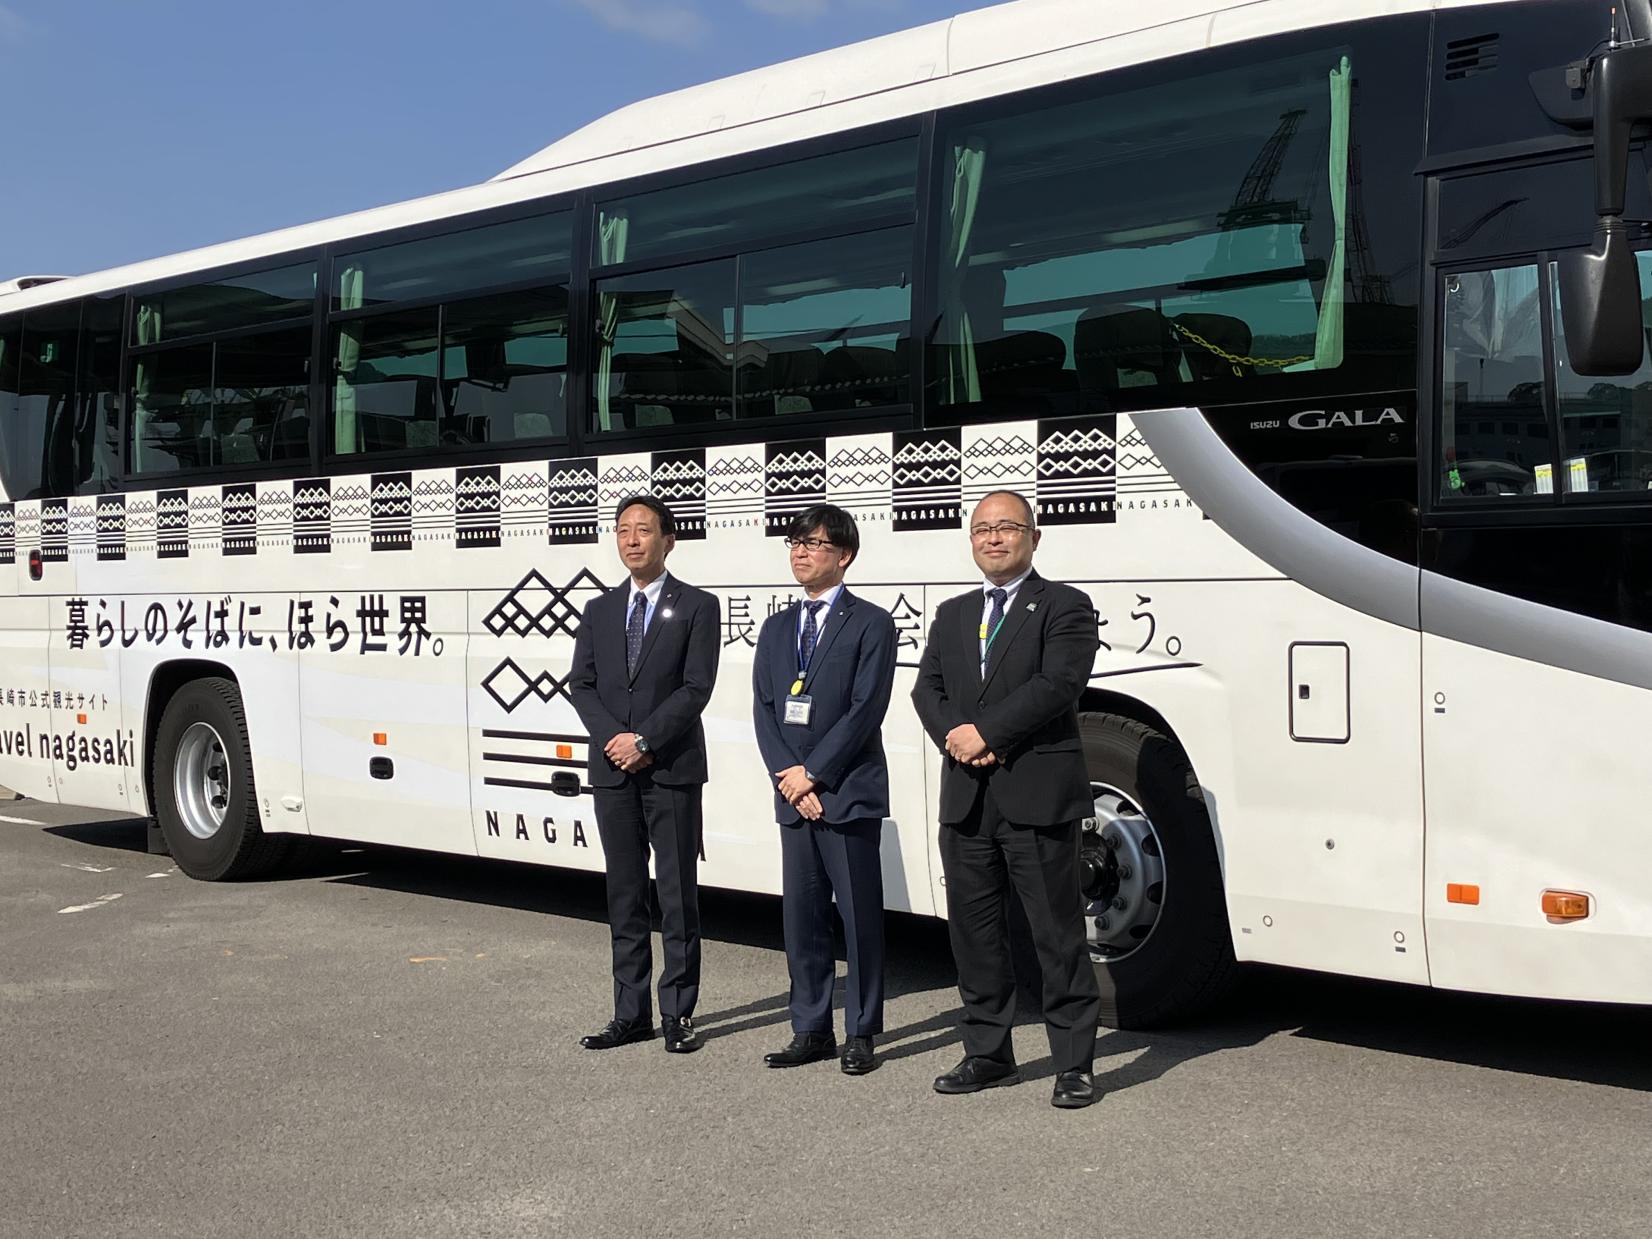 【お知らせ】長崎市観光マスターブランドデザインのラッピングバス運行が始まりました-1